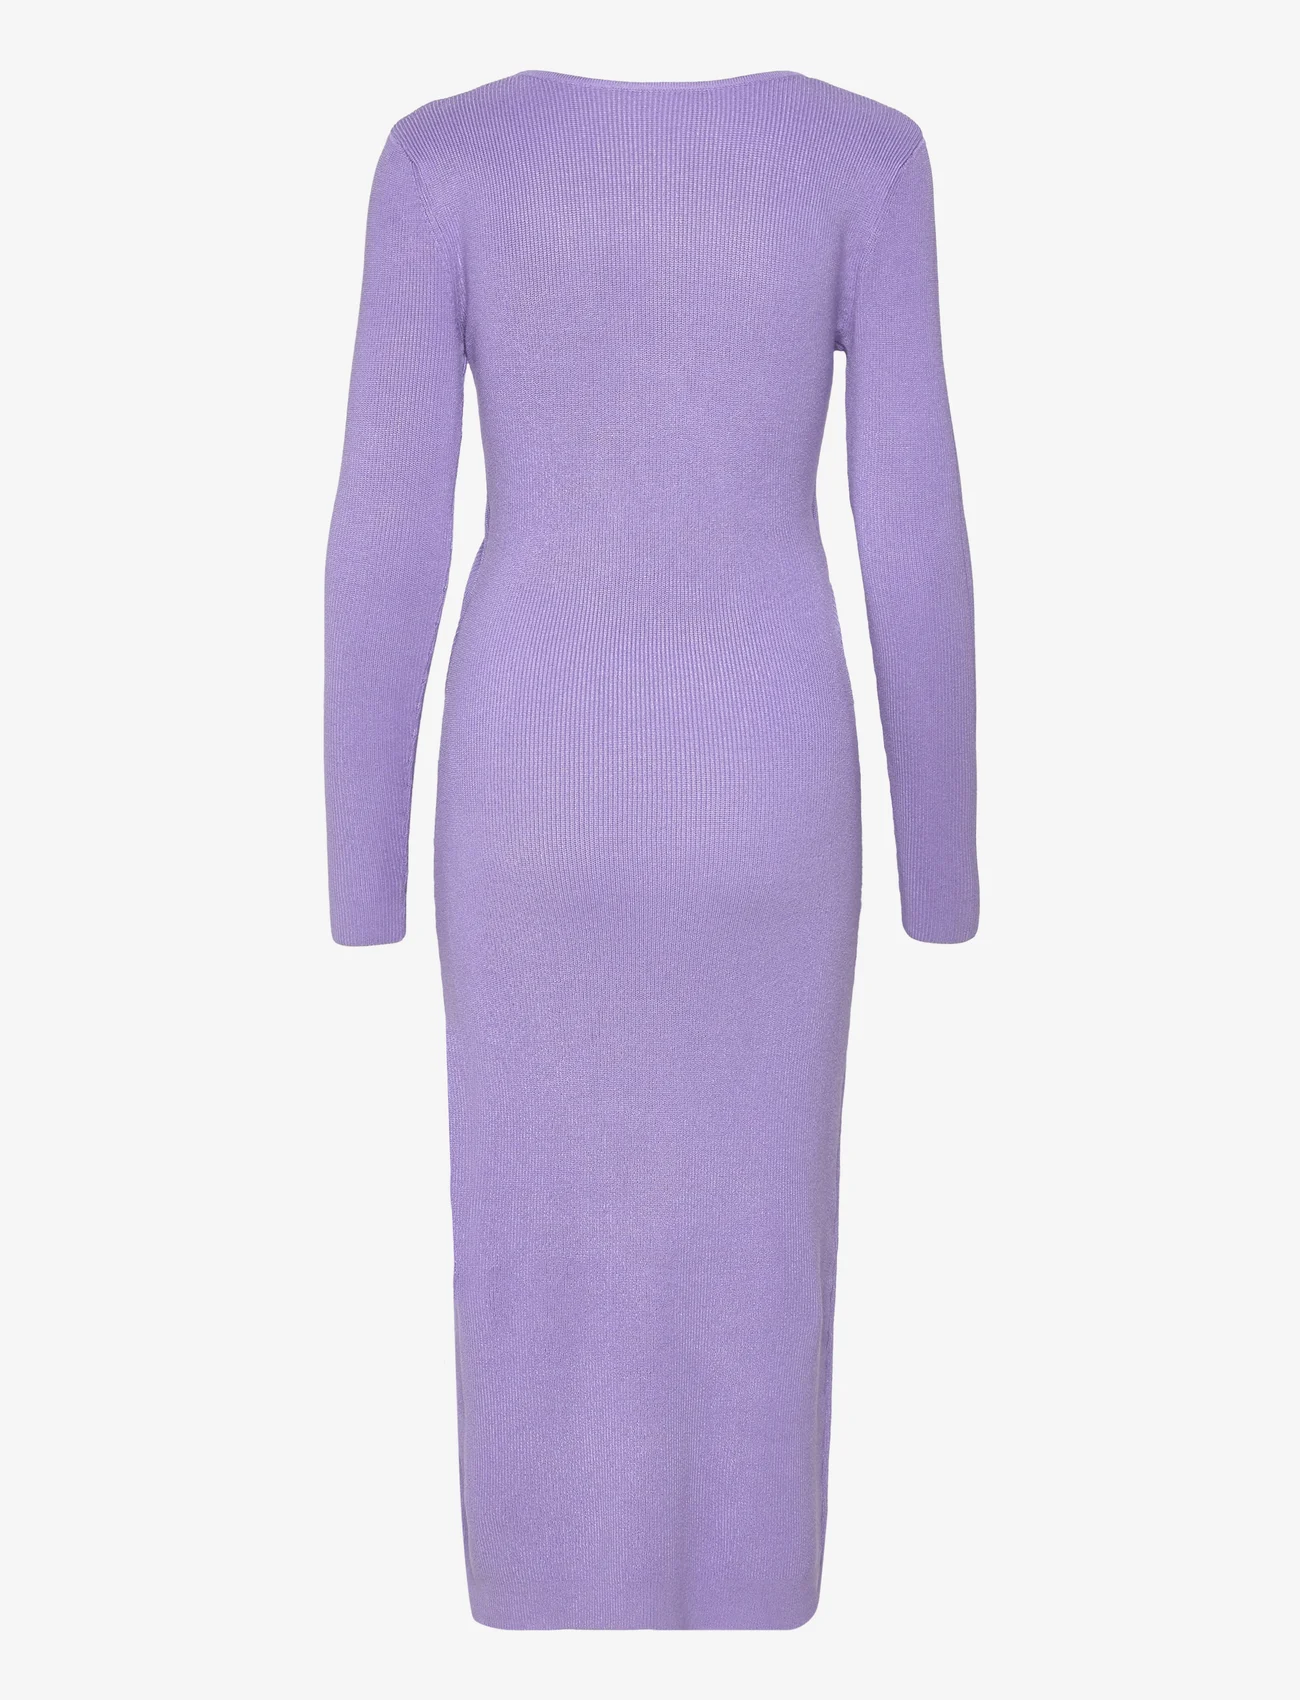 bzr - Lela Jenner dress - etuikleider - lavender - 1